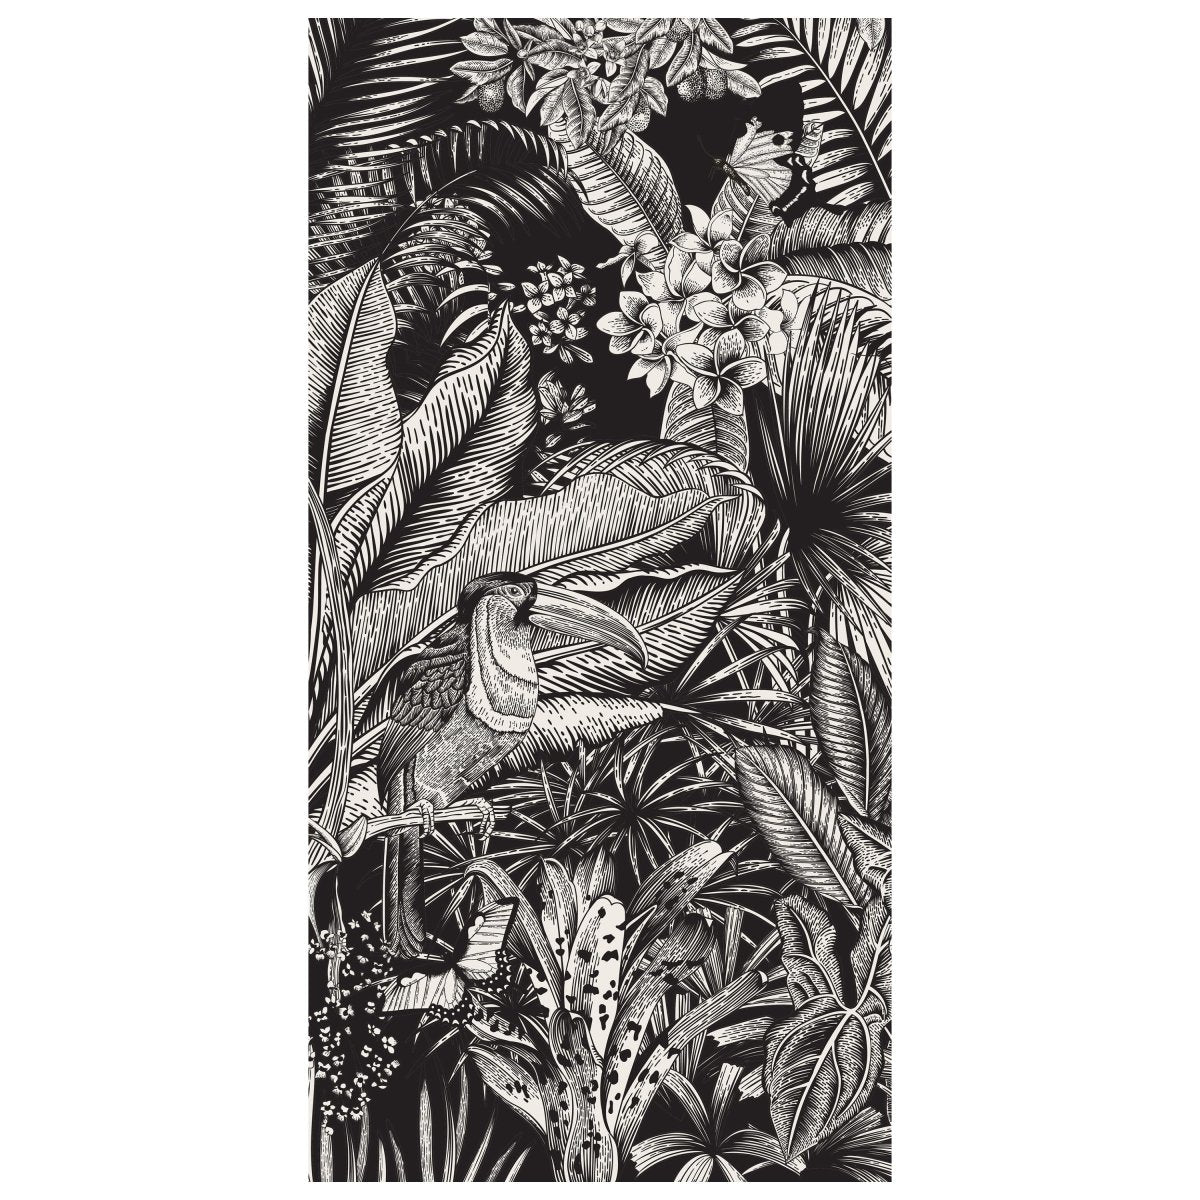 Türtapete Zeichnung Leben im Dschungel, Pflanzen M1362 - Bild 2